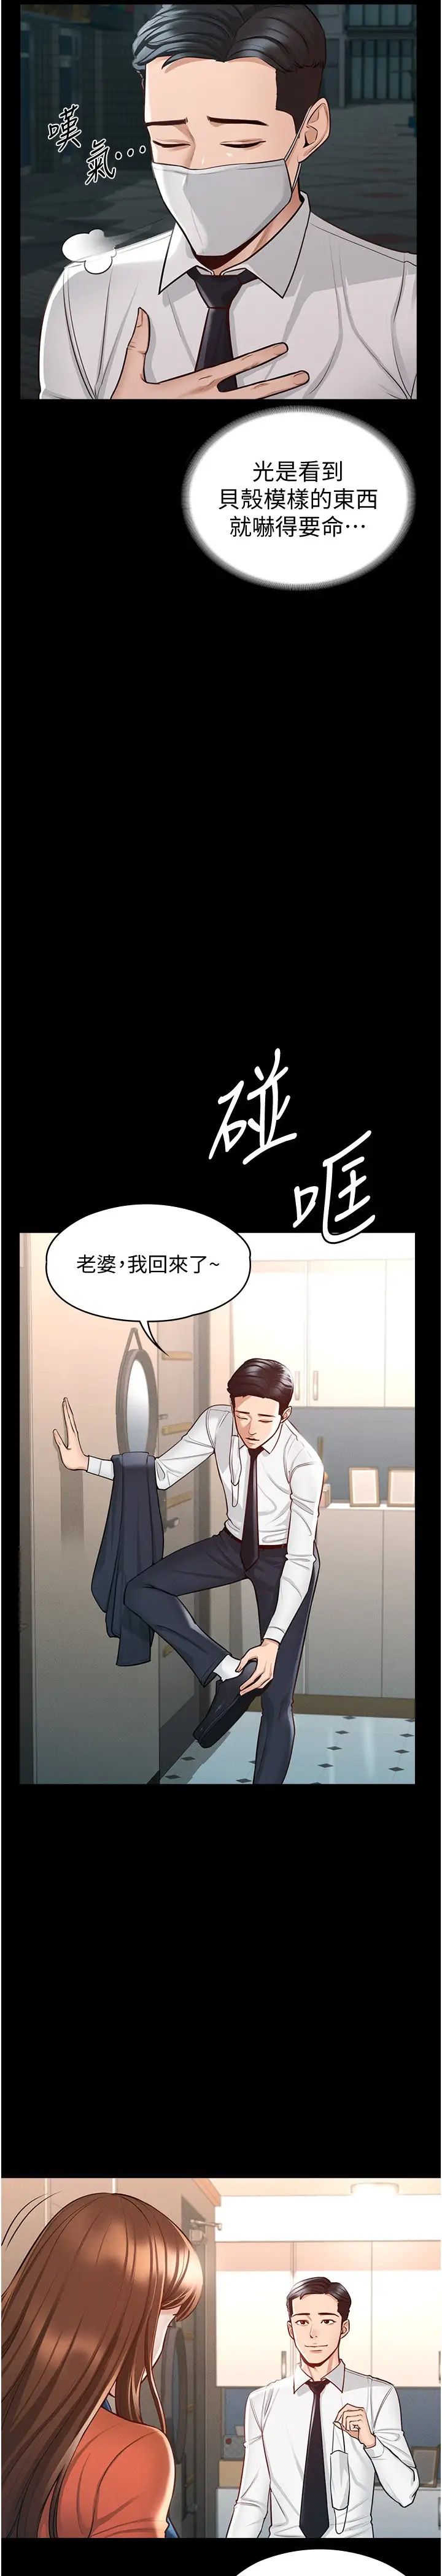 韩国污漫画 超級公務員 第4话 无所不能的「攻」务系统 5